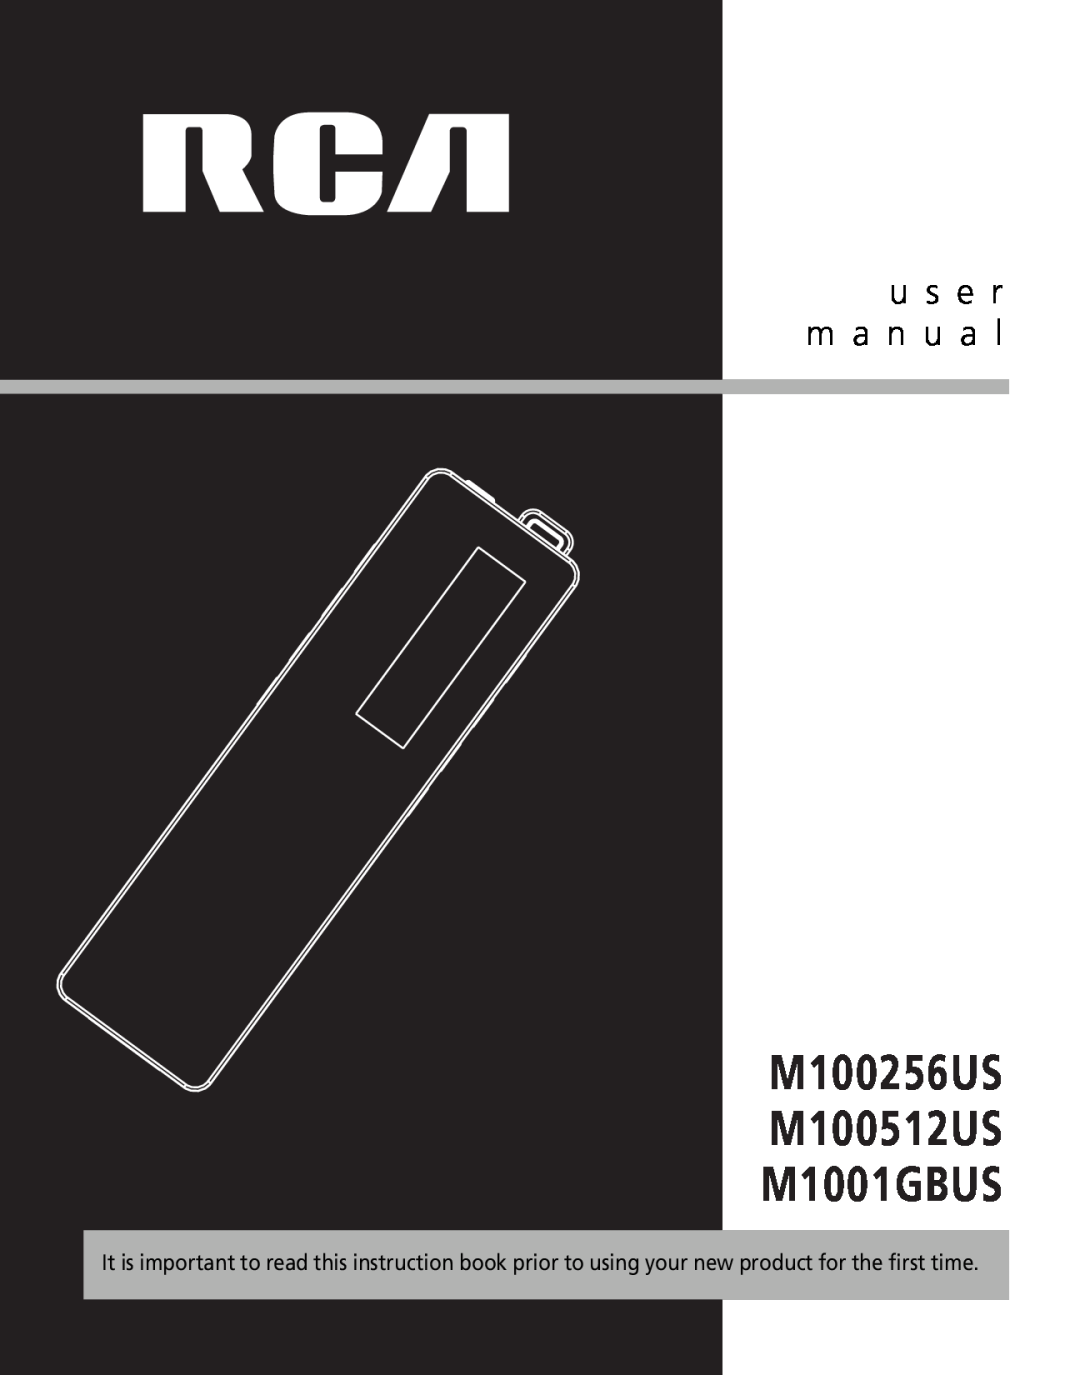 RCA user manual u s e r m a n u a l, M100256US M100512US M1001GBUS 